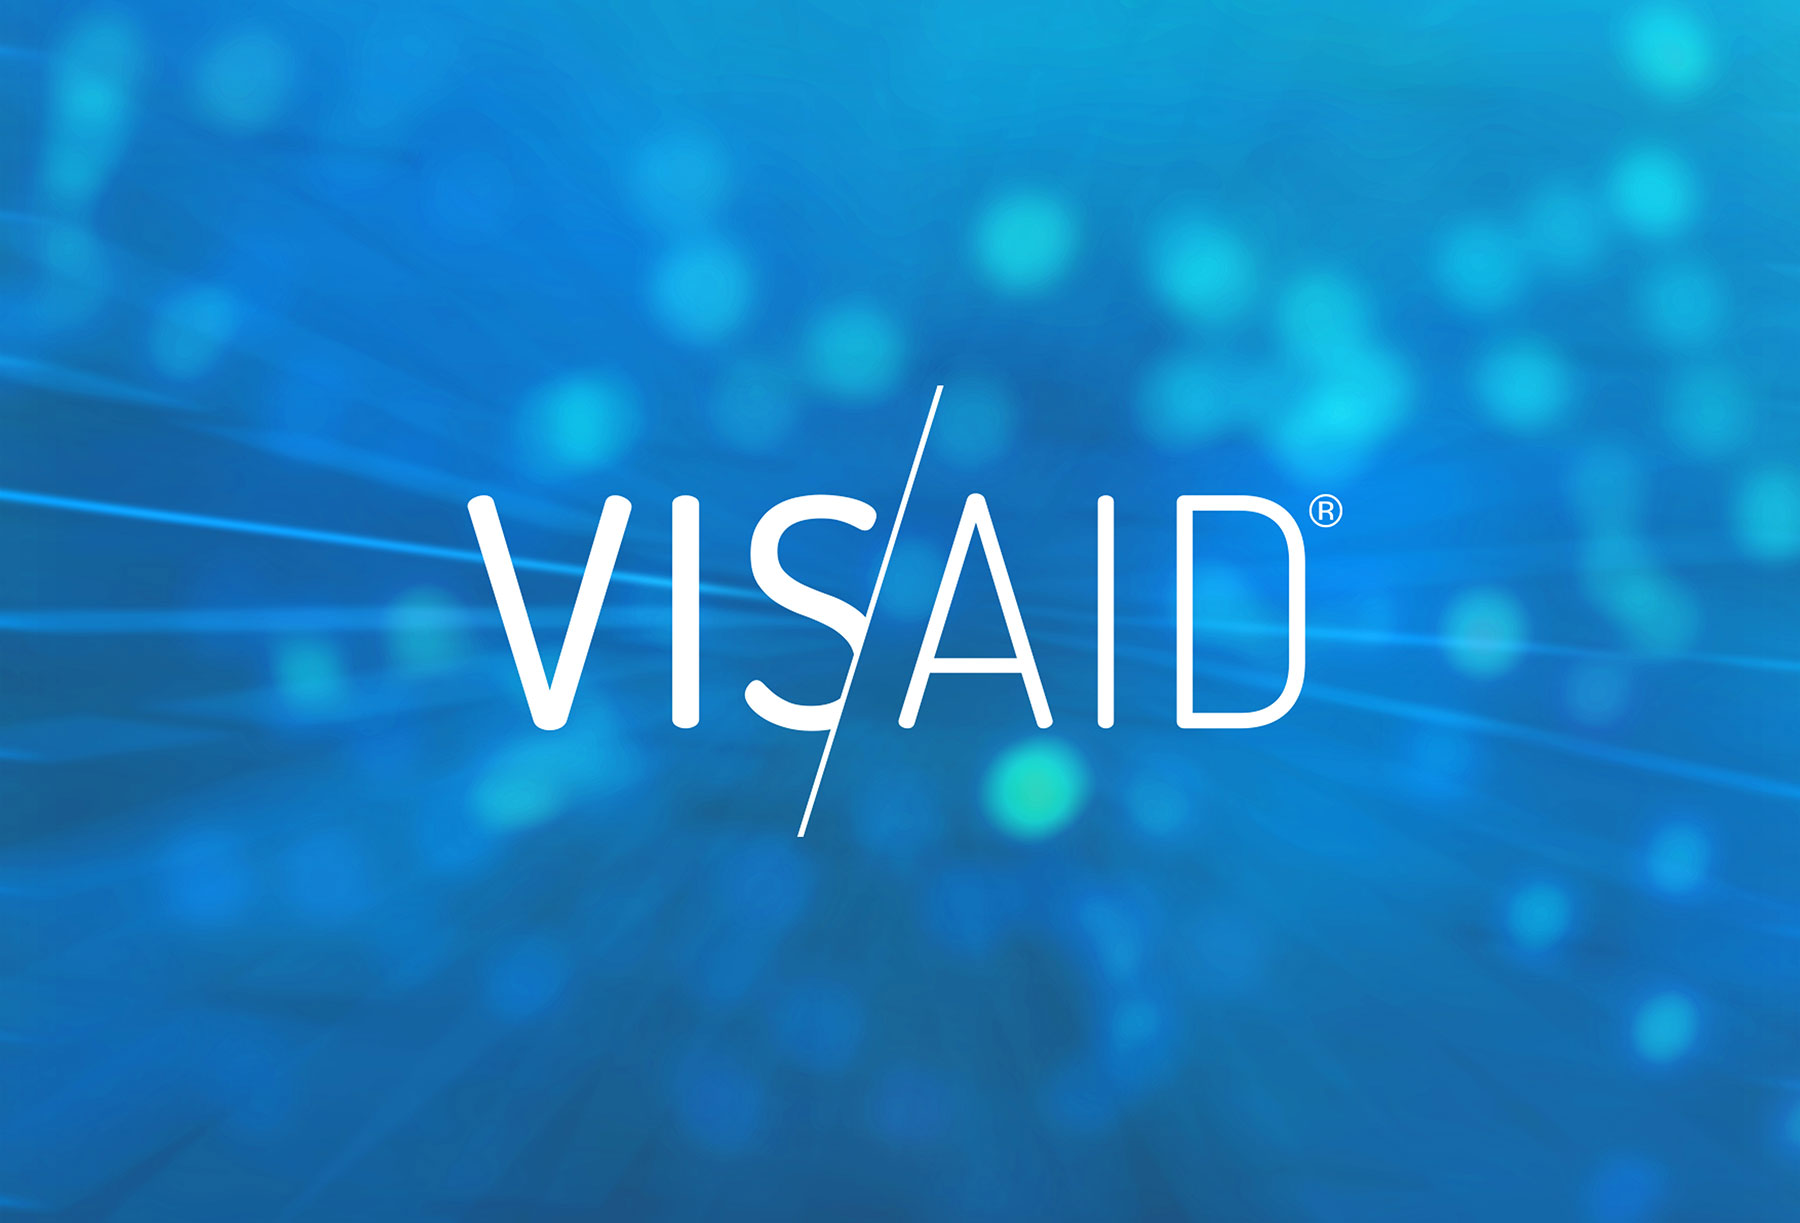 Logotipo de la marca Visaid